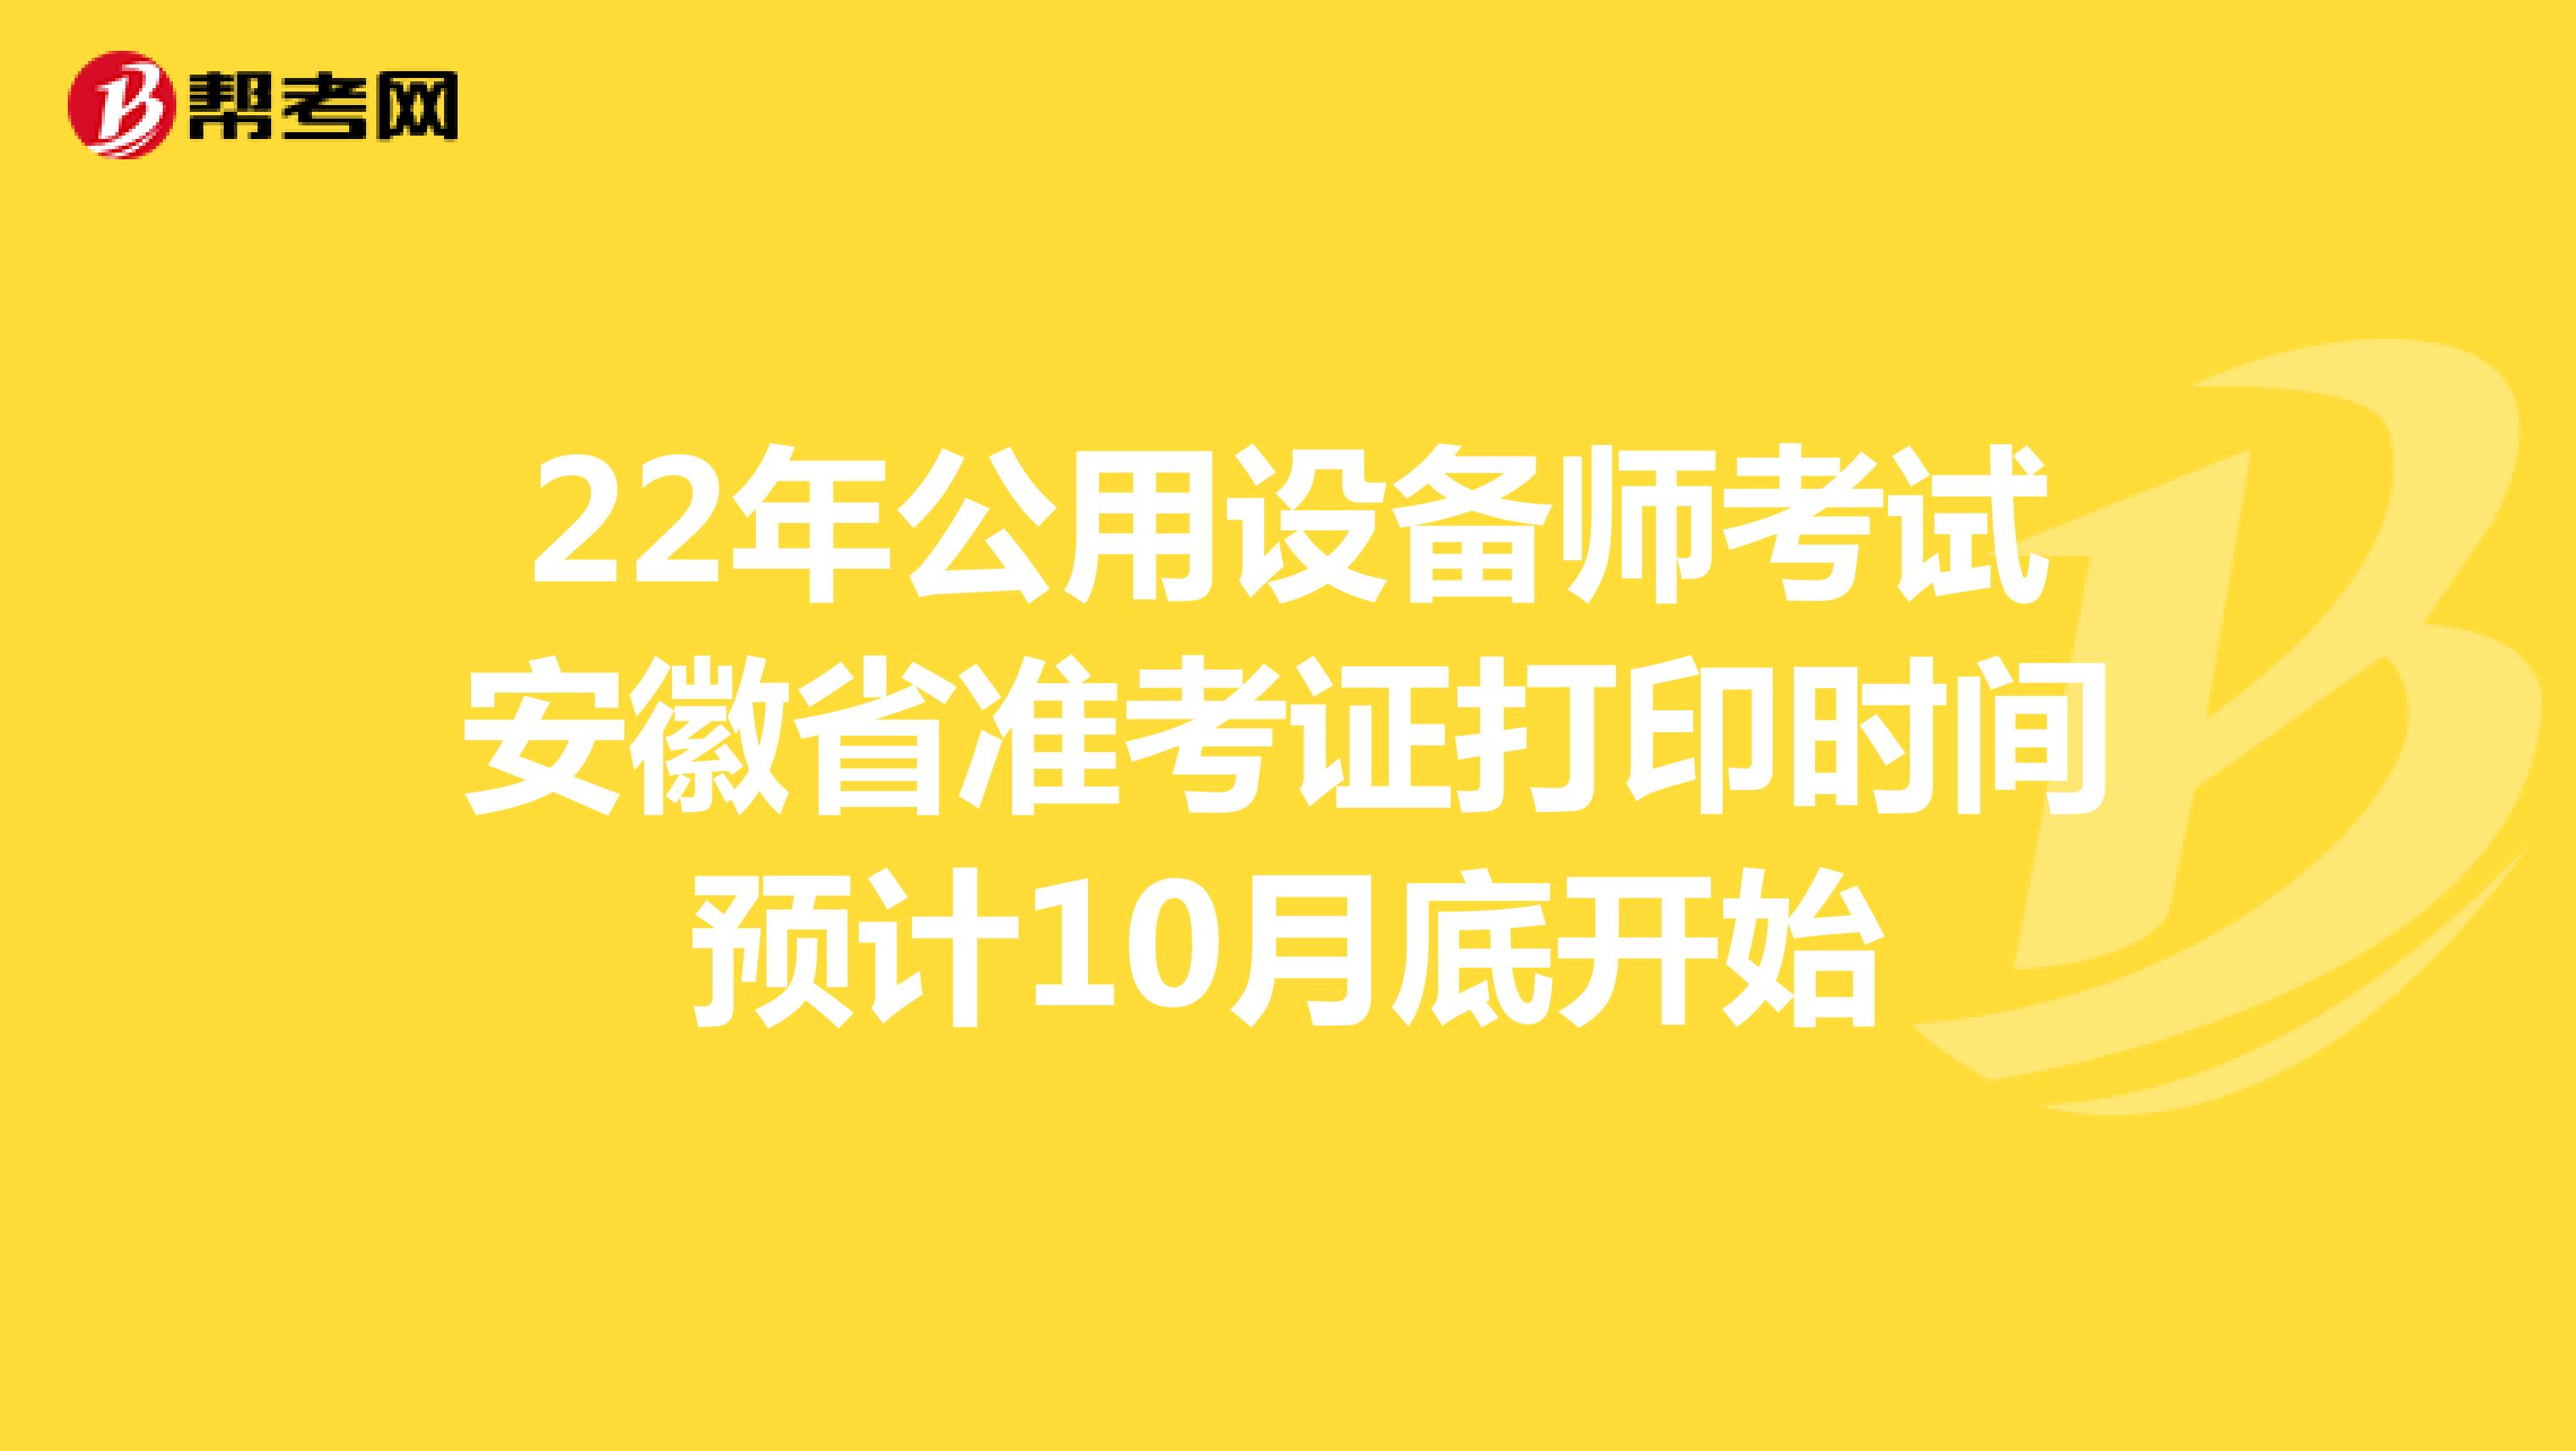 22年公用设备师考试安徽省准考证打印时间预计10月底开始